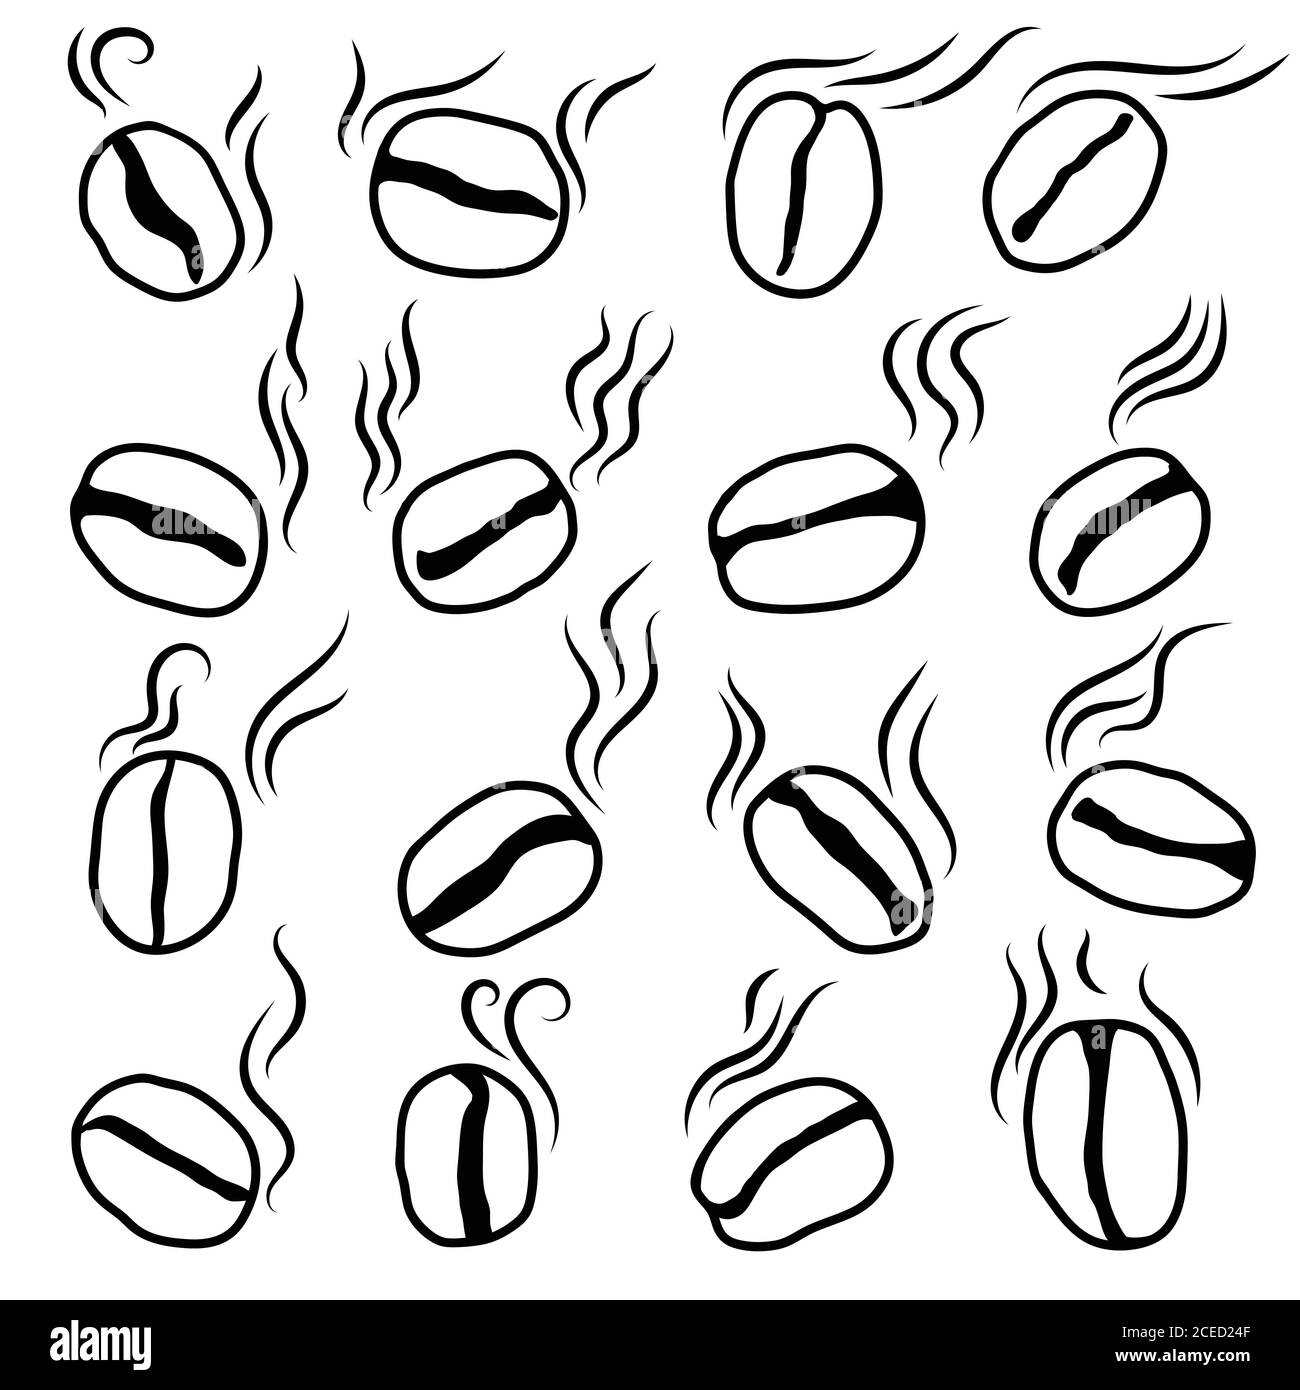 Ensemble d'icônes de grains de café silhouette isolée, dessin à la main. Esquisse aromatique de grains de café avec fumée. Café rôti. Illustration vectorielle. Illustration de Vecteur